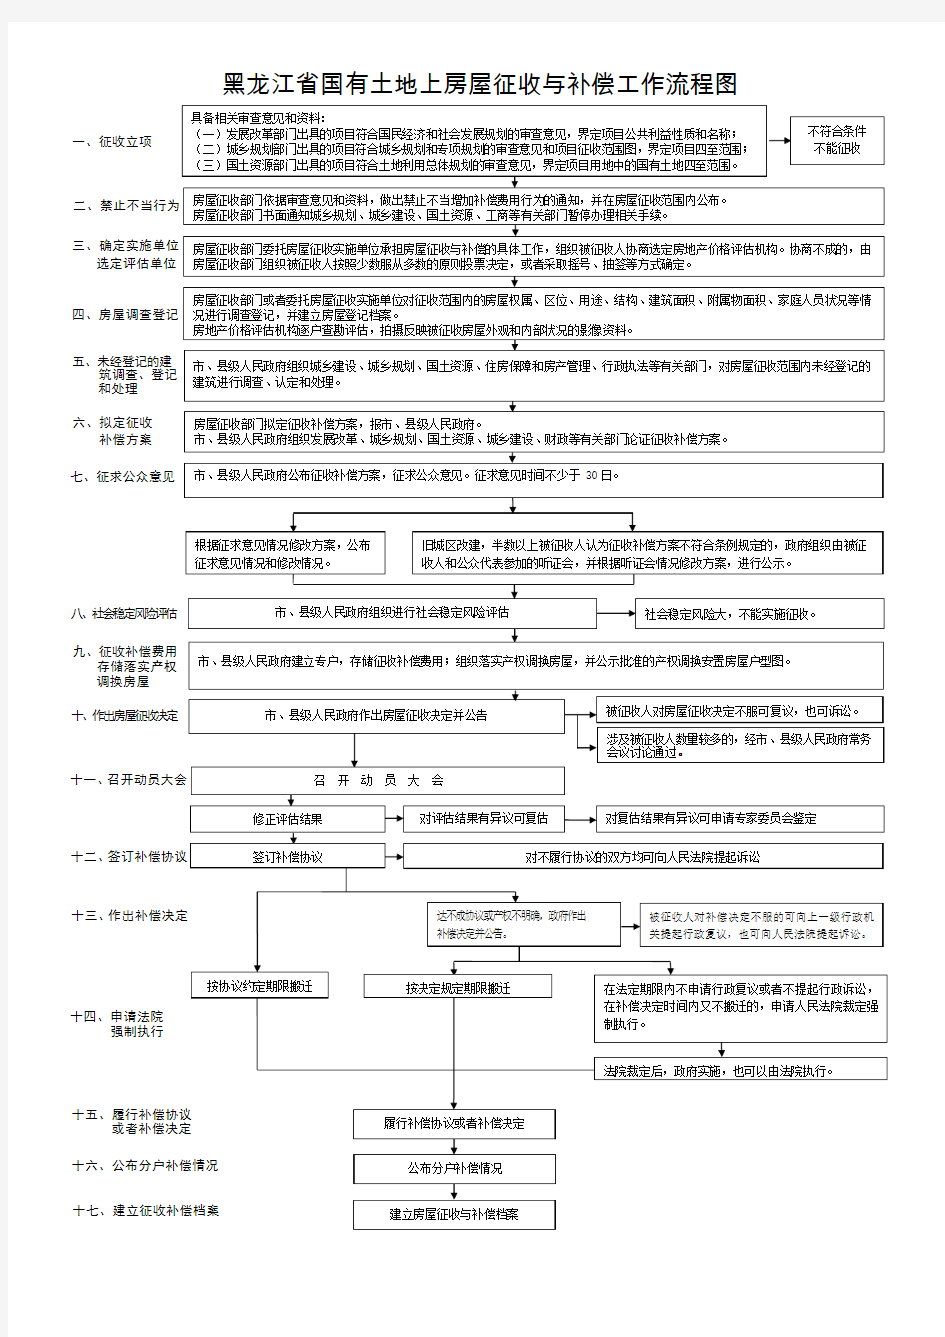 黑龙江省国有土地上房屋征收与补偿工作流程图